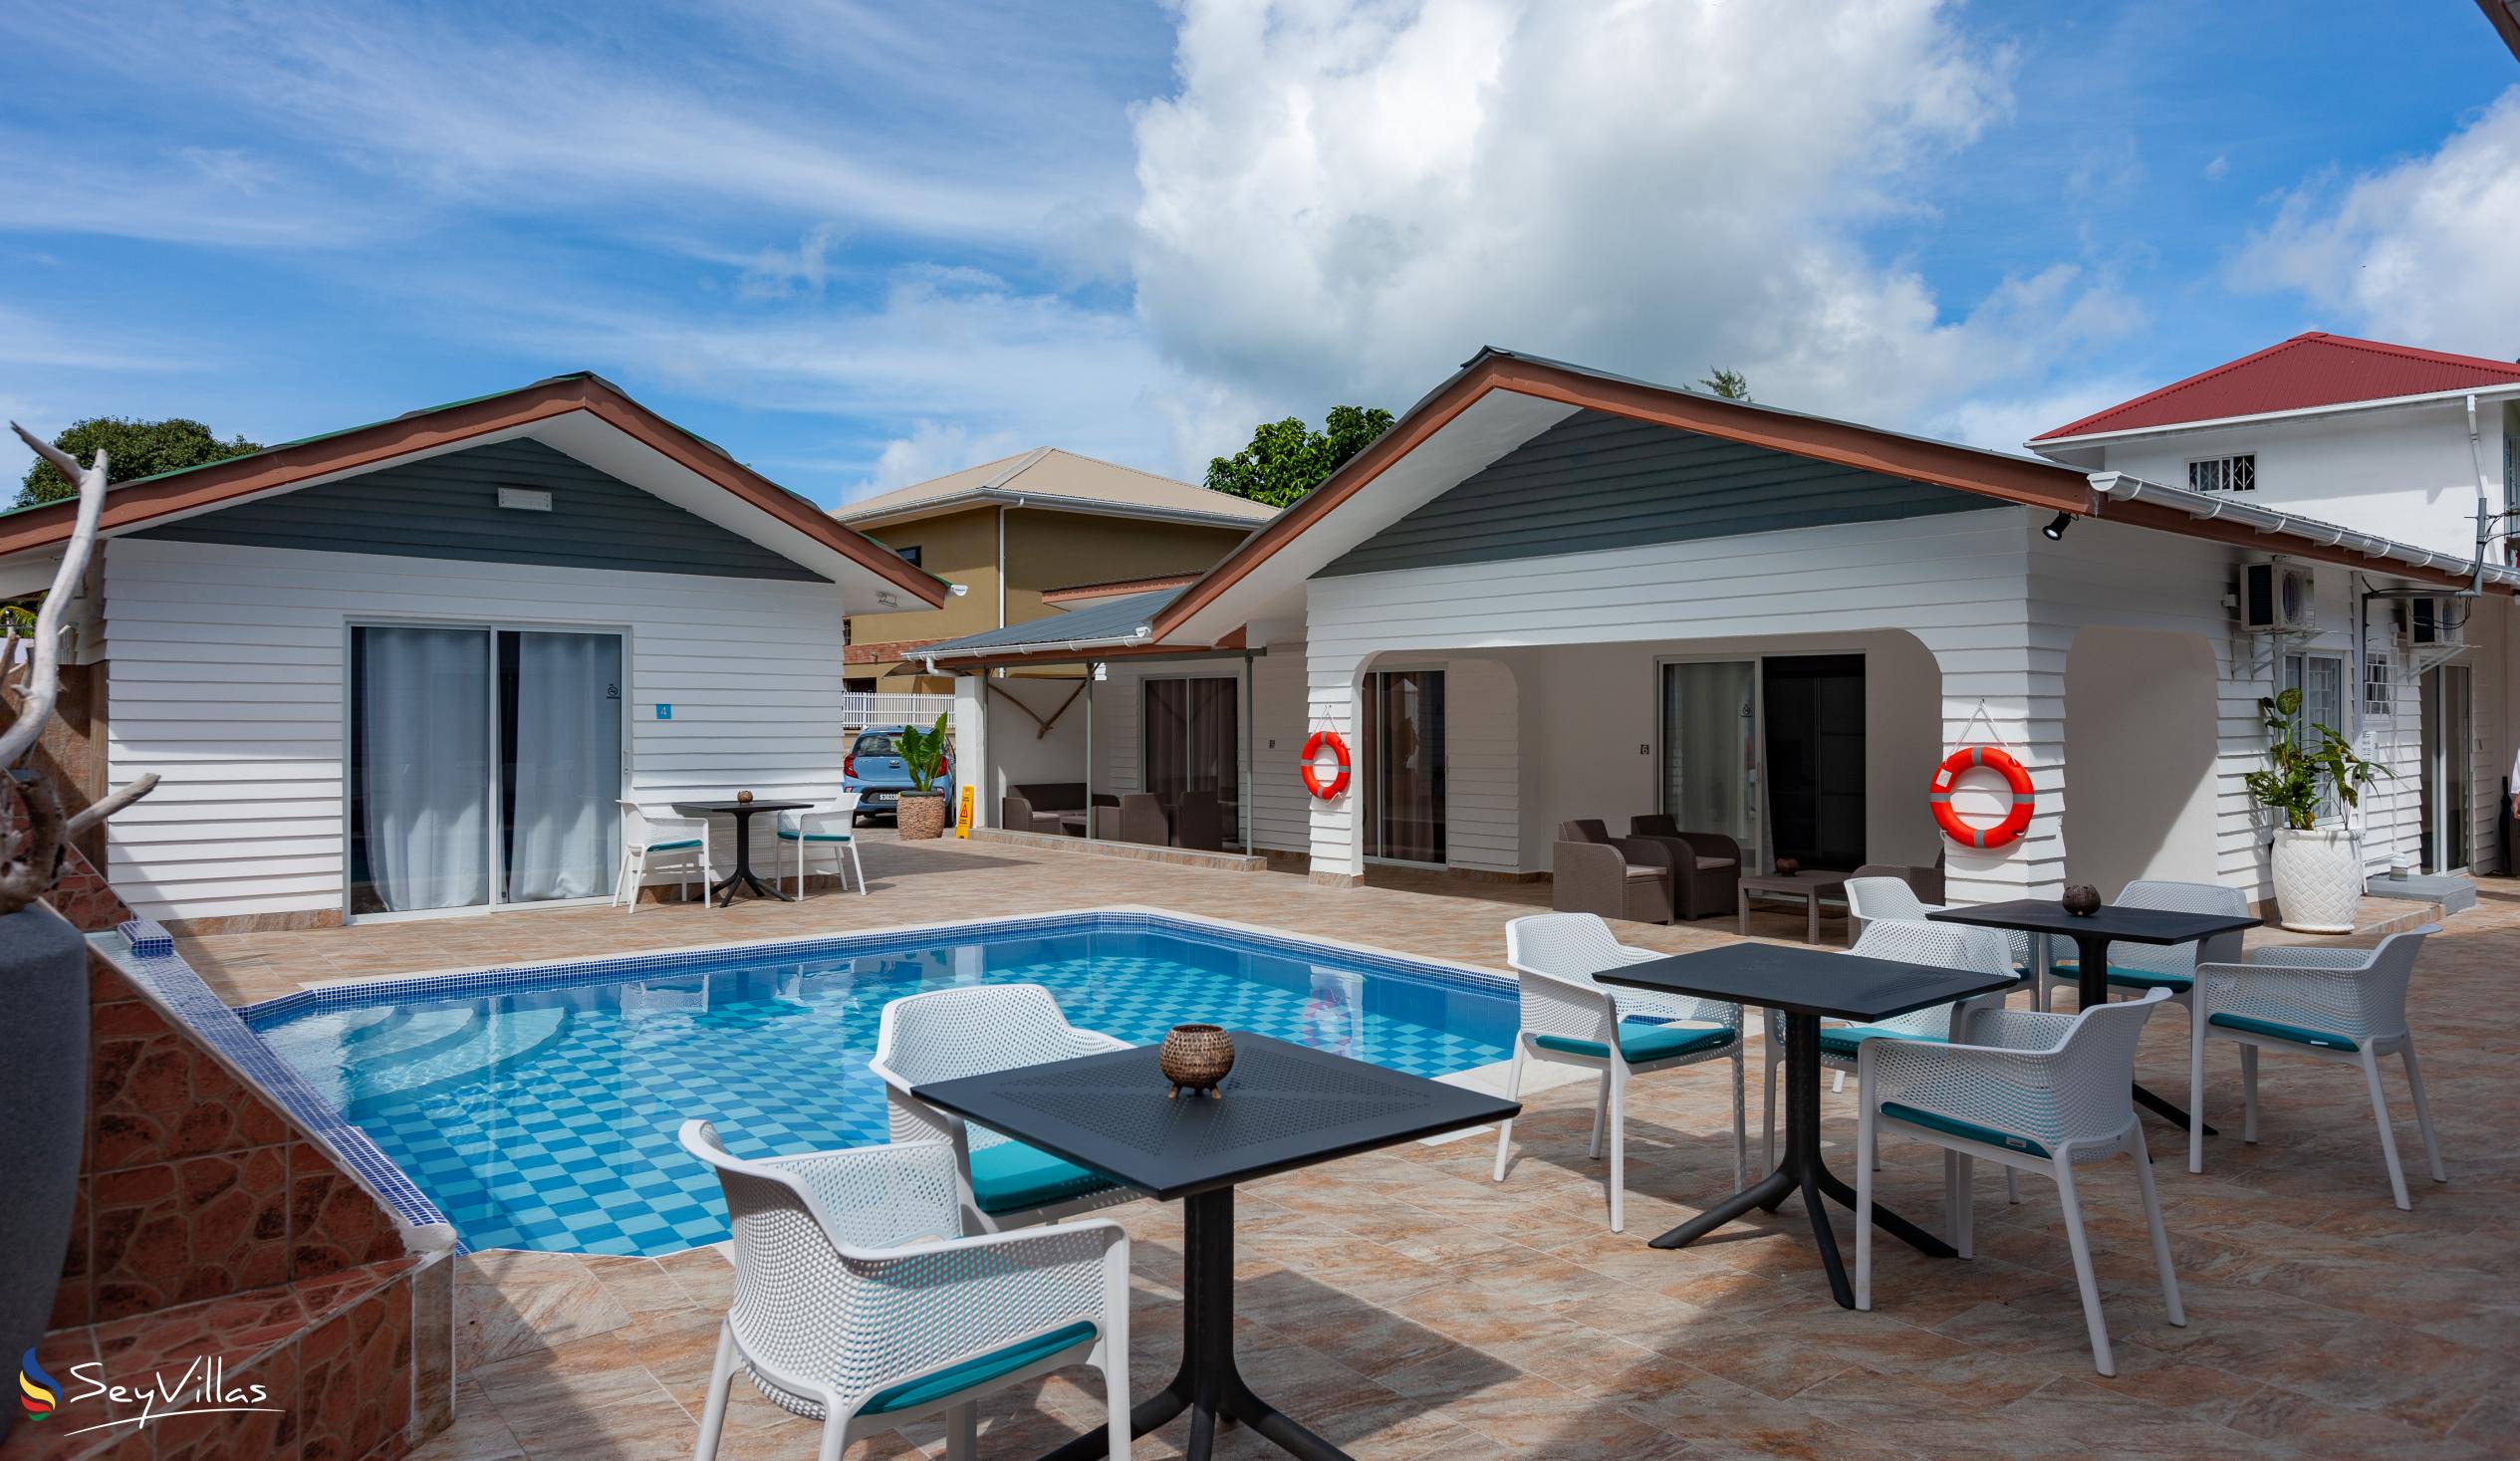 Photo 9: Hotel Plein Soleil - Outdoor area - Praslin (Seychelles)